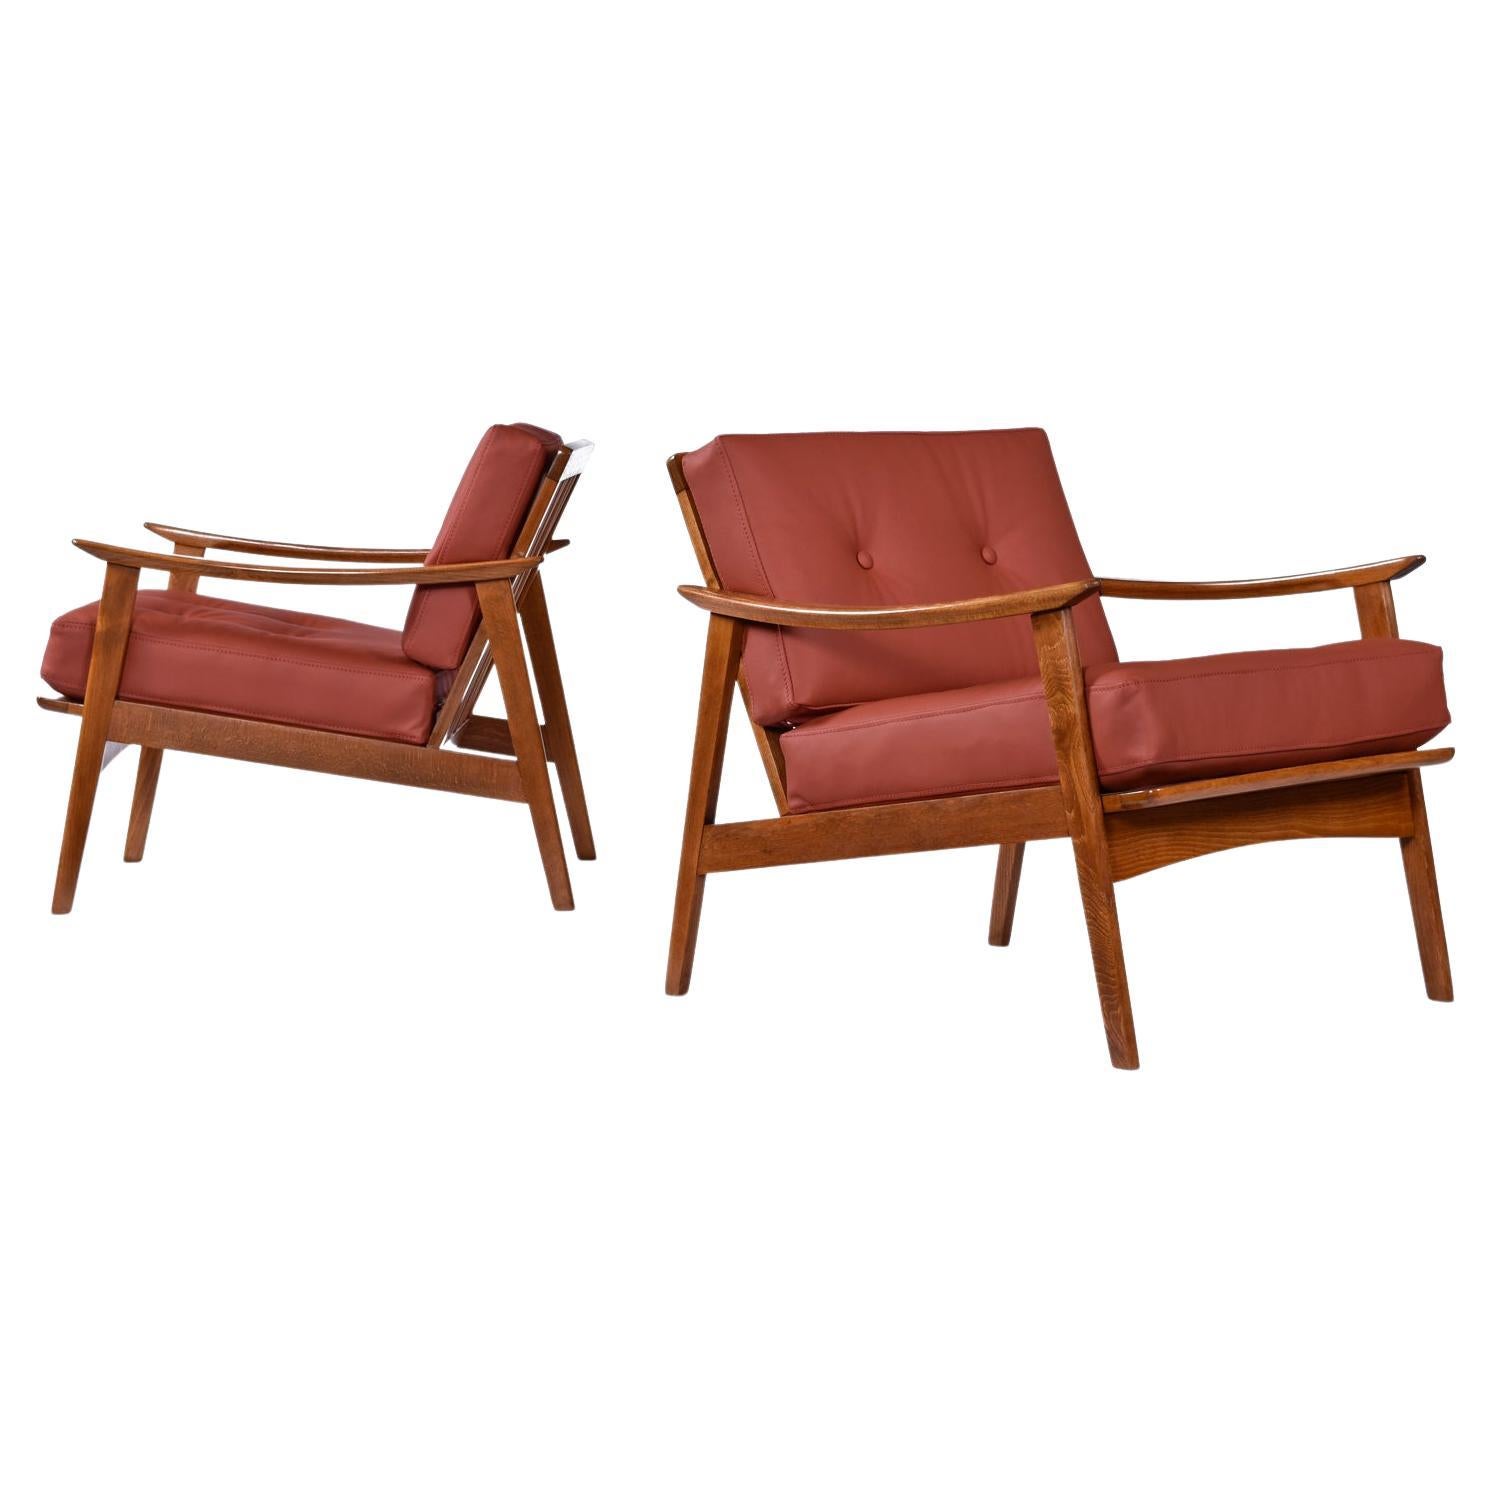 1960's Cognac Leder Skandinavisch Modern Buche Wood Lounge Stühle